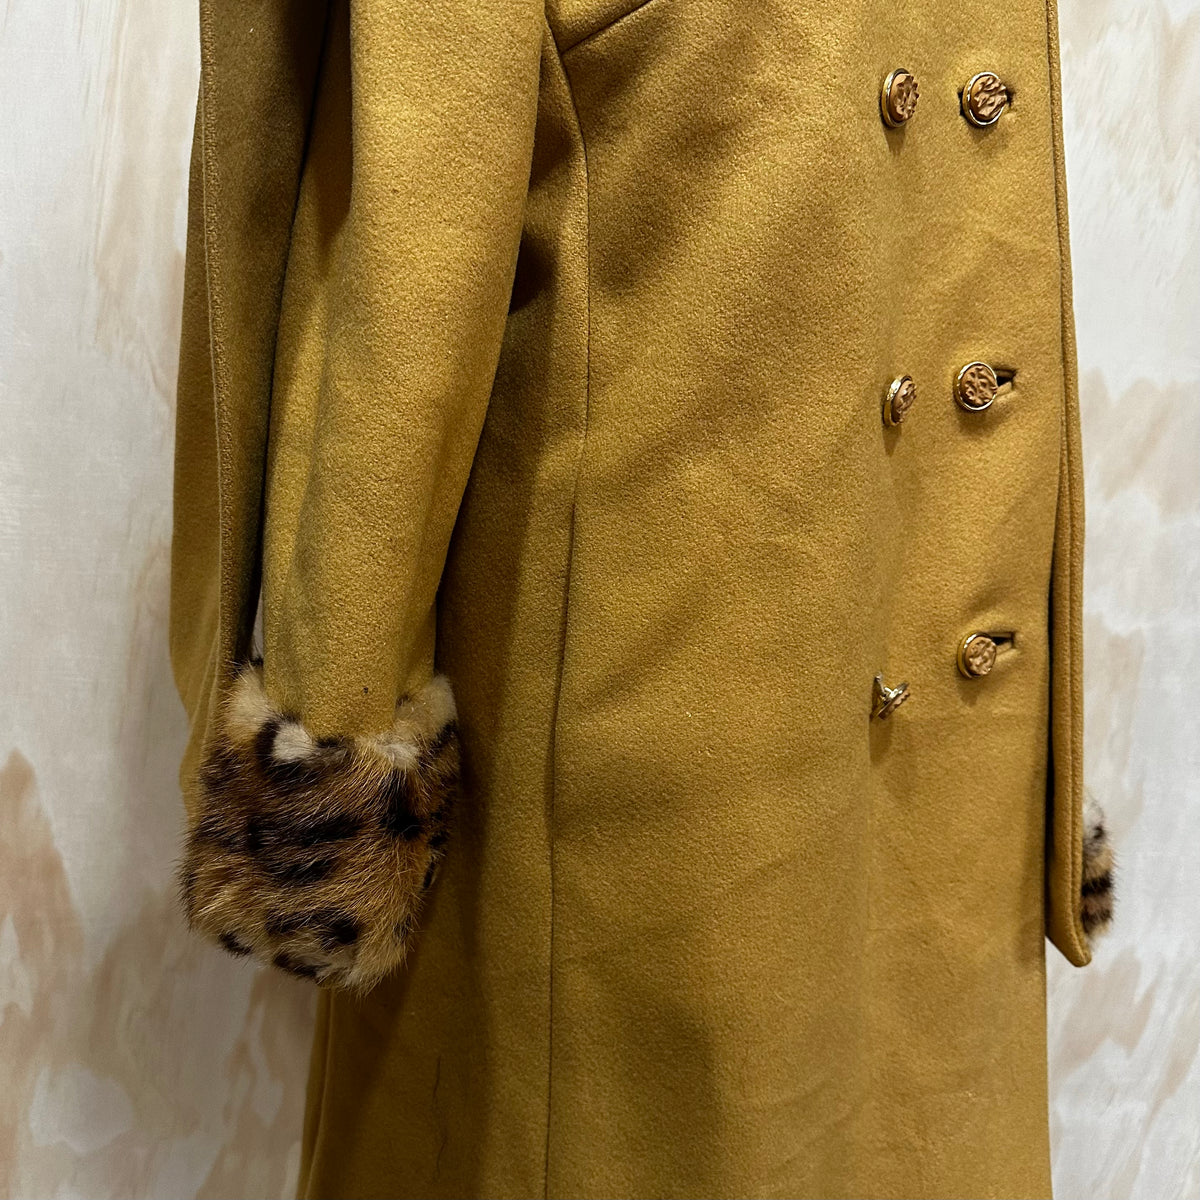 60s Vintage Heavy Wool Pea Coat Womens Jacket